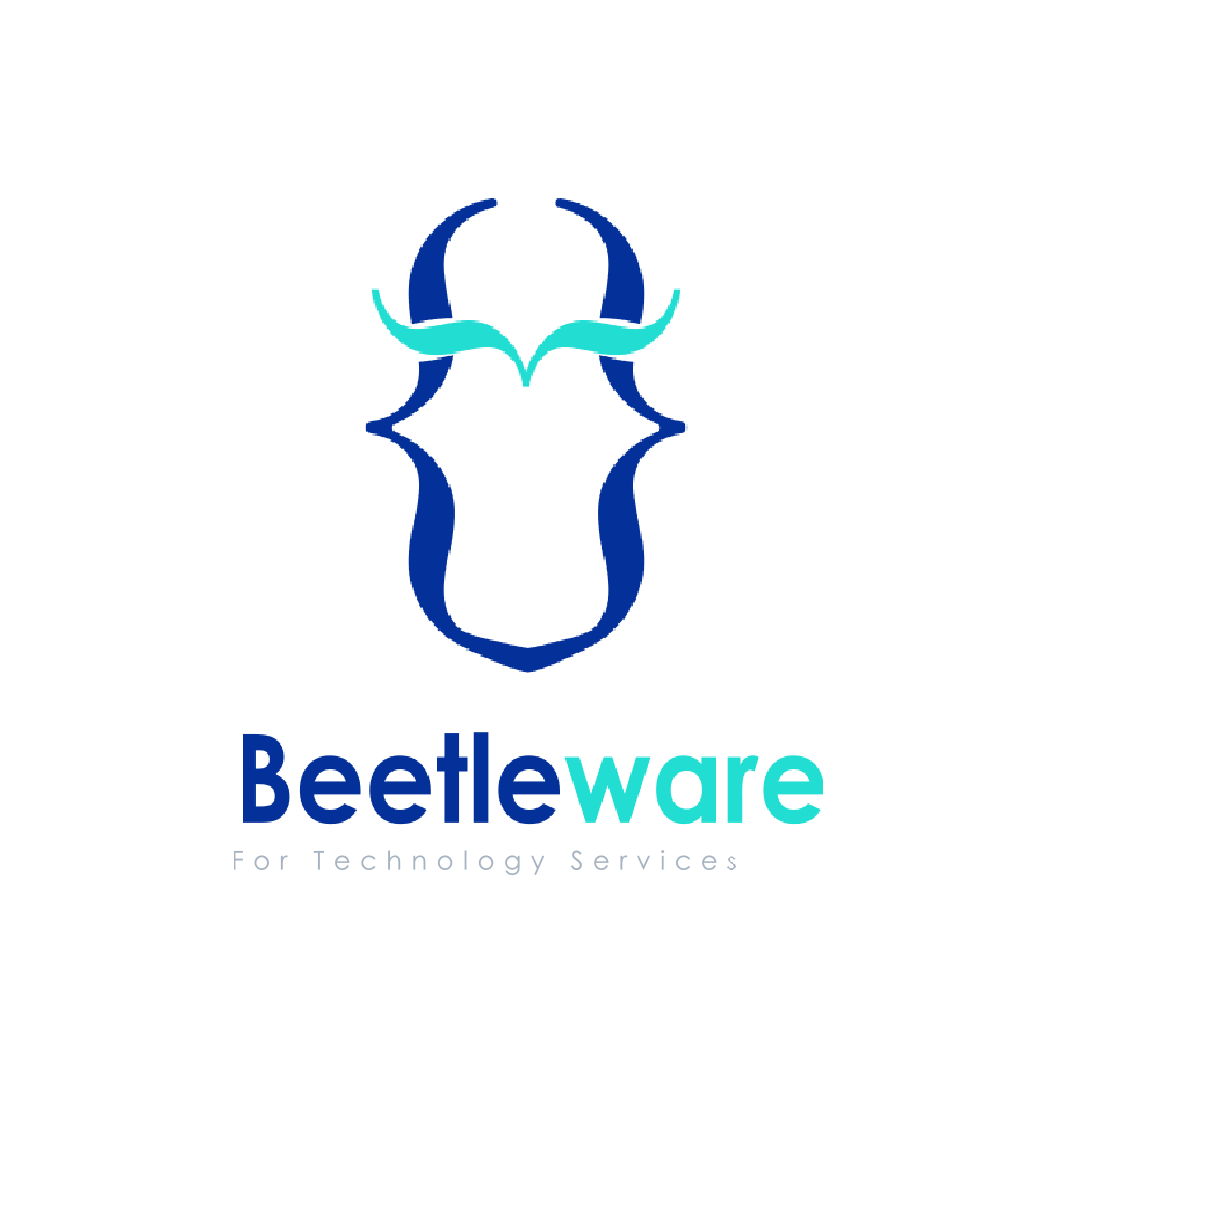 Beetleware